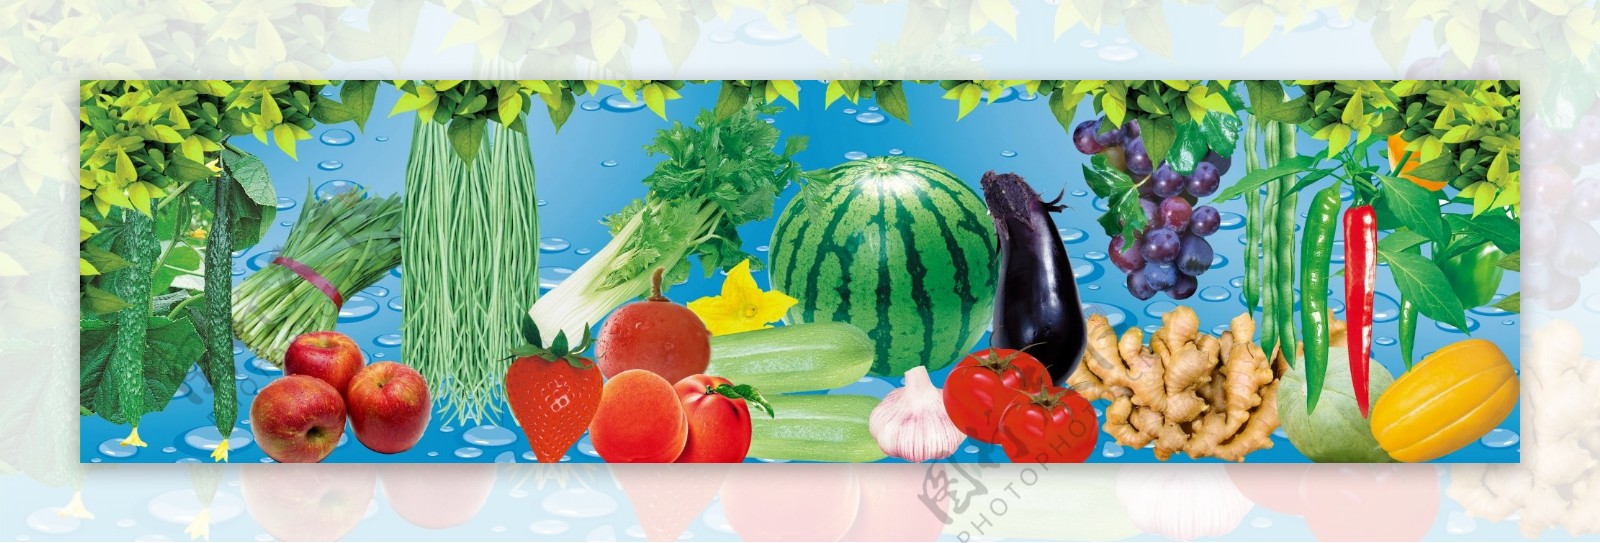 各种新鲜蔬菜水果图片